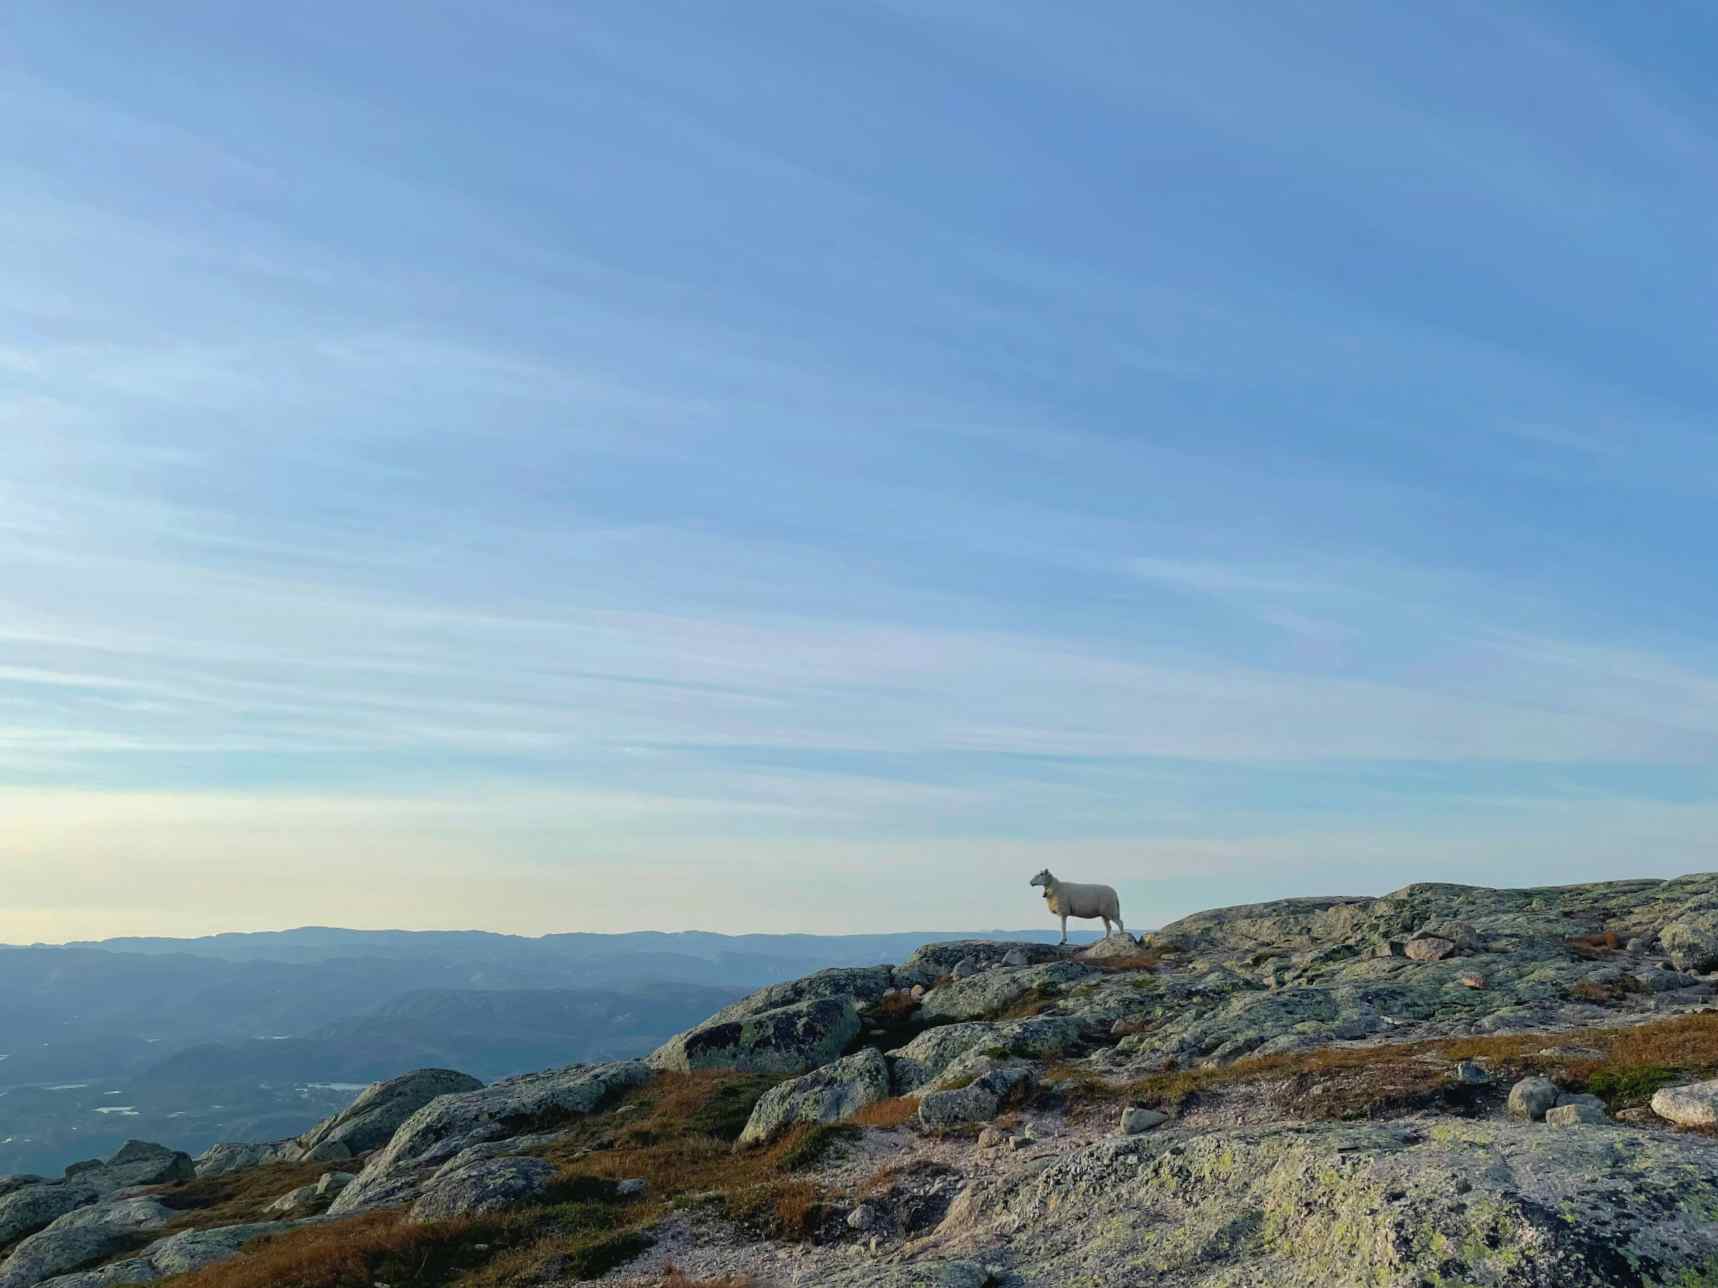 A sheep on rocks, enjoying the view from Hilleknuten